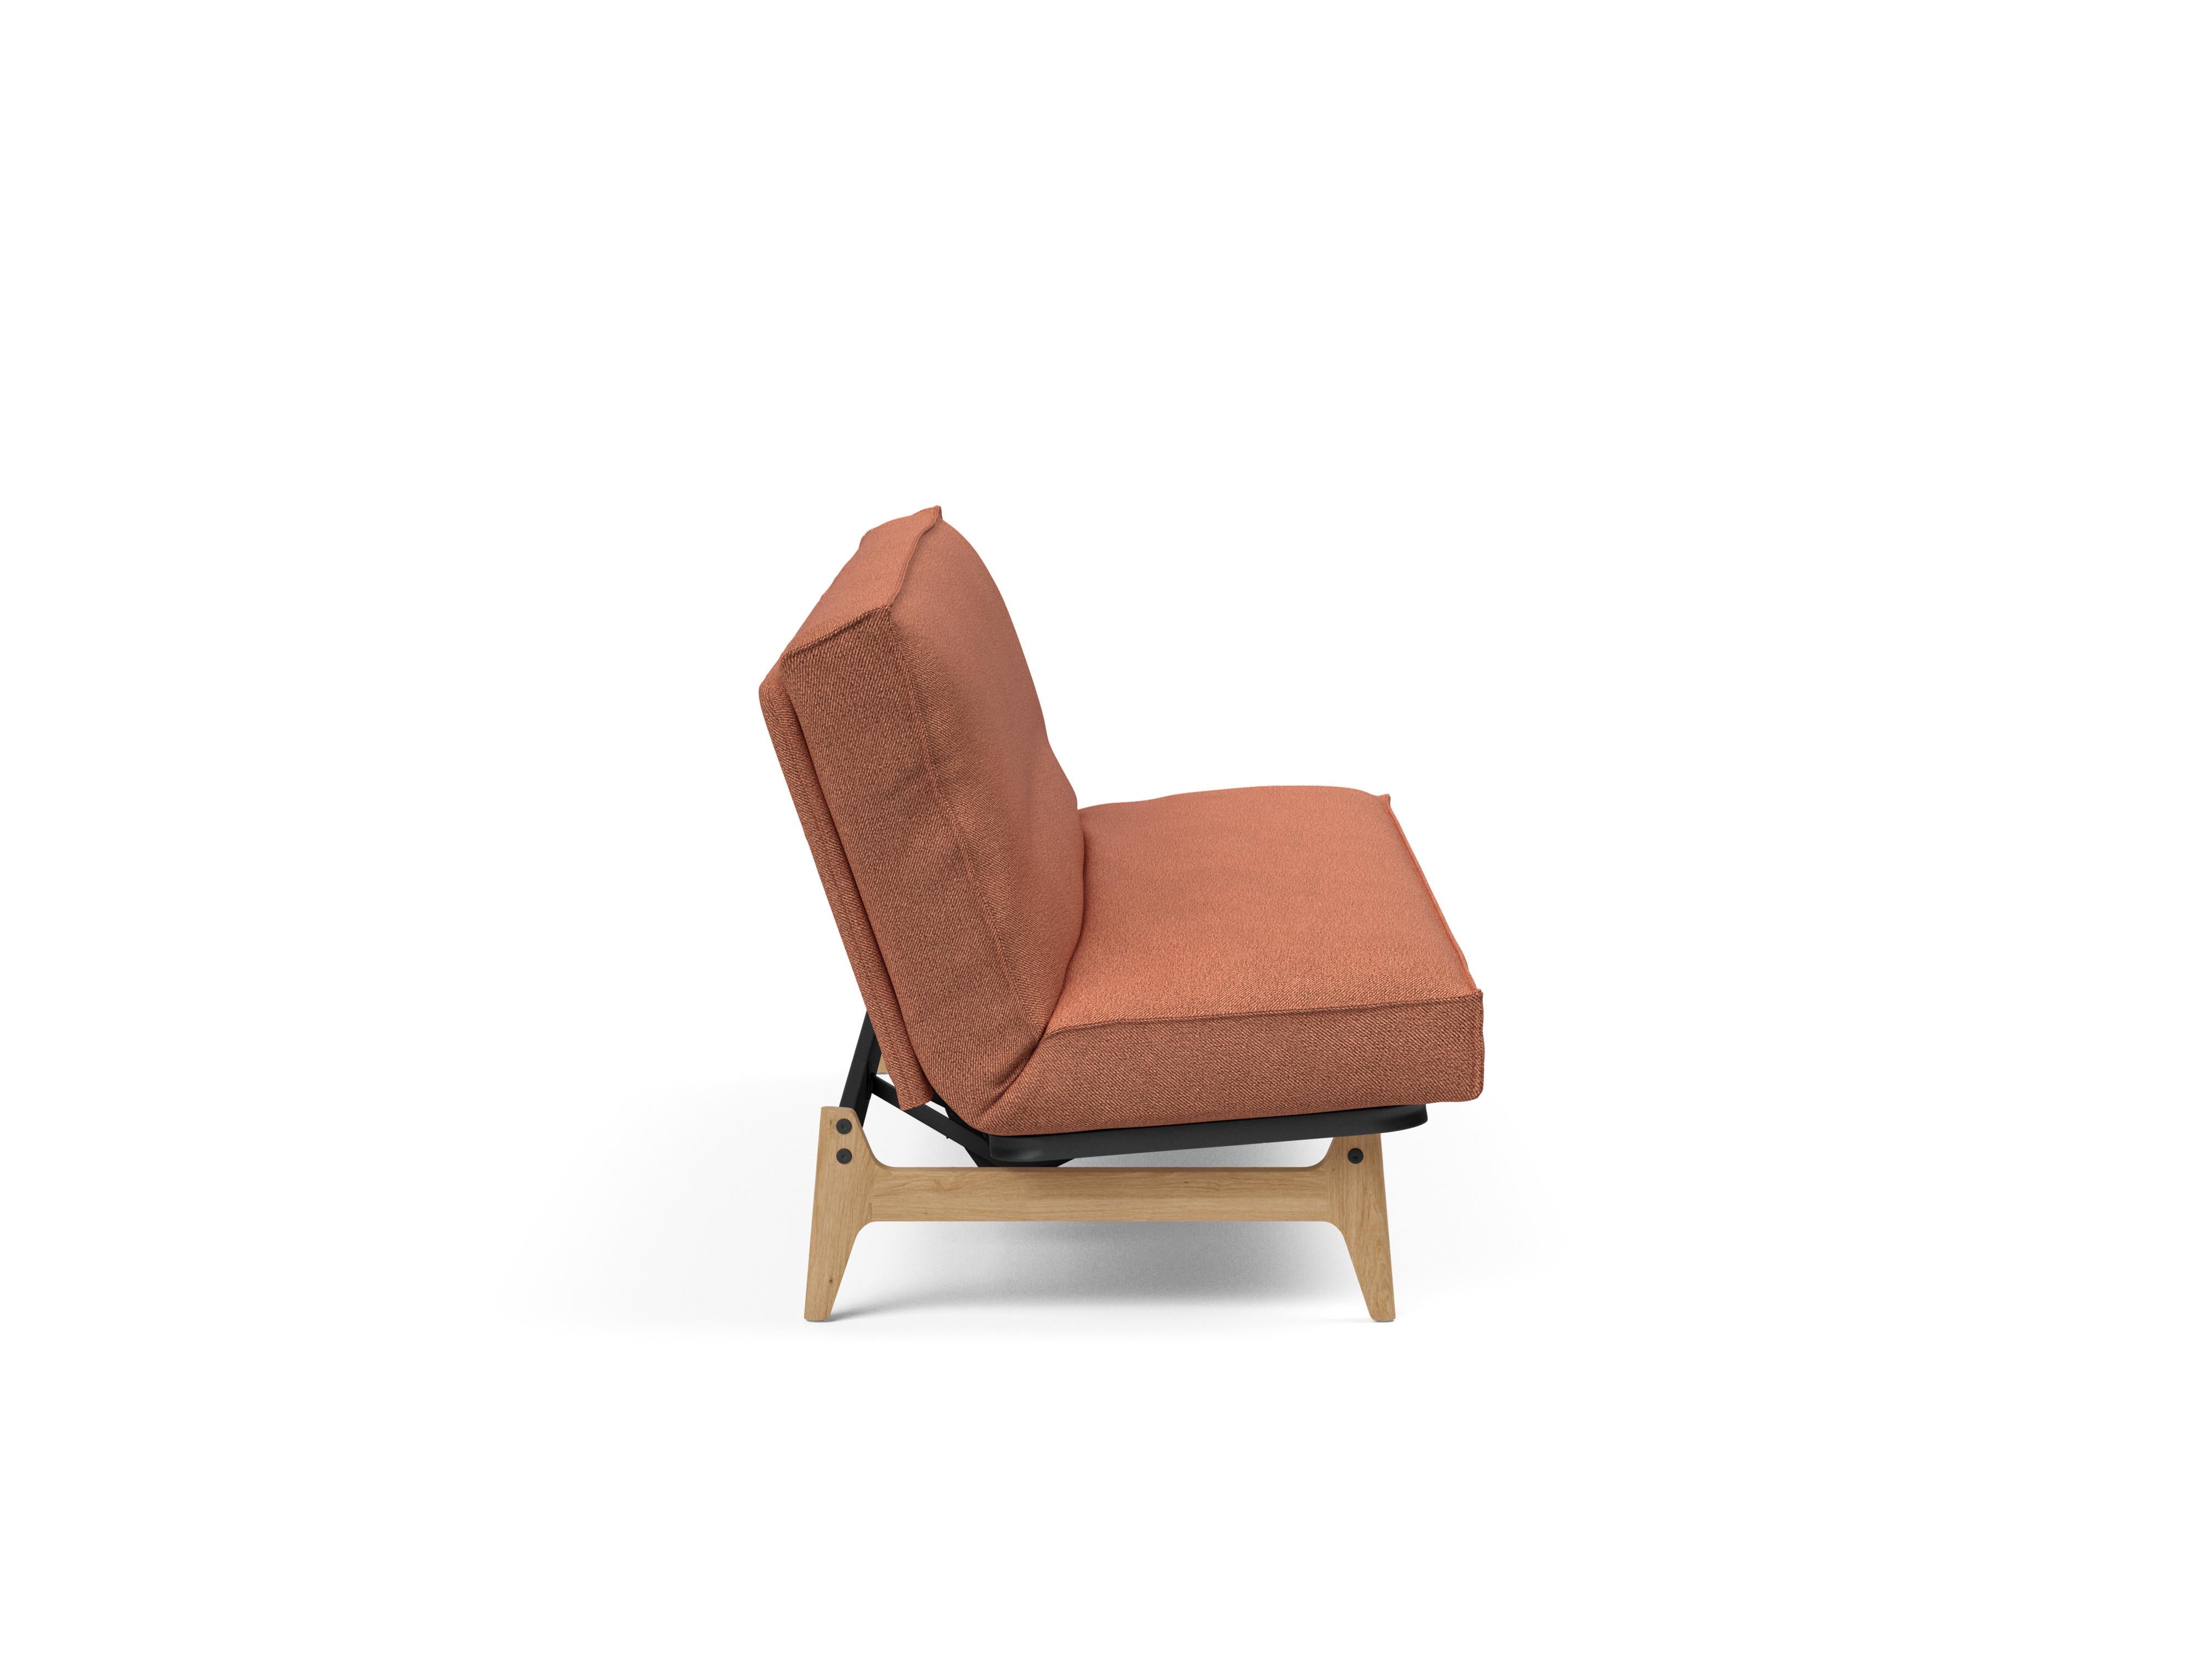 Aslak 120 Bettsofa Sharp Plus Cover in Rust 301 präsentiert im Onlineshop von KAQTU Design AG. Bettsofa ist von Innovation Living